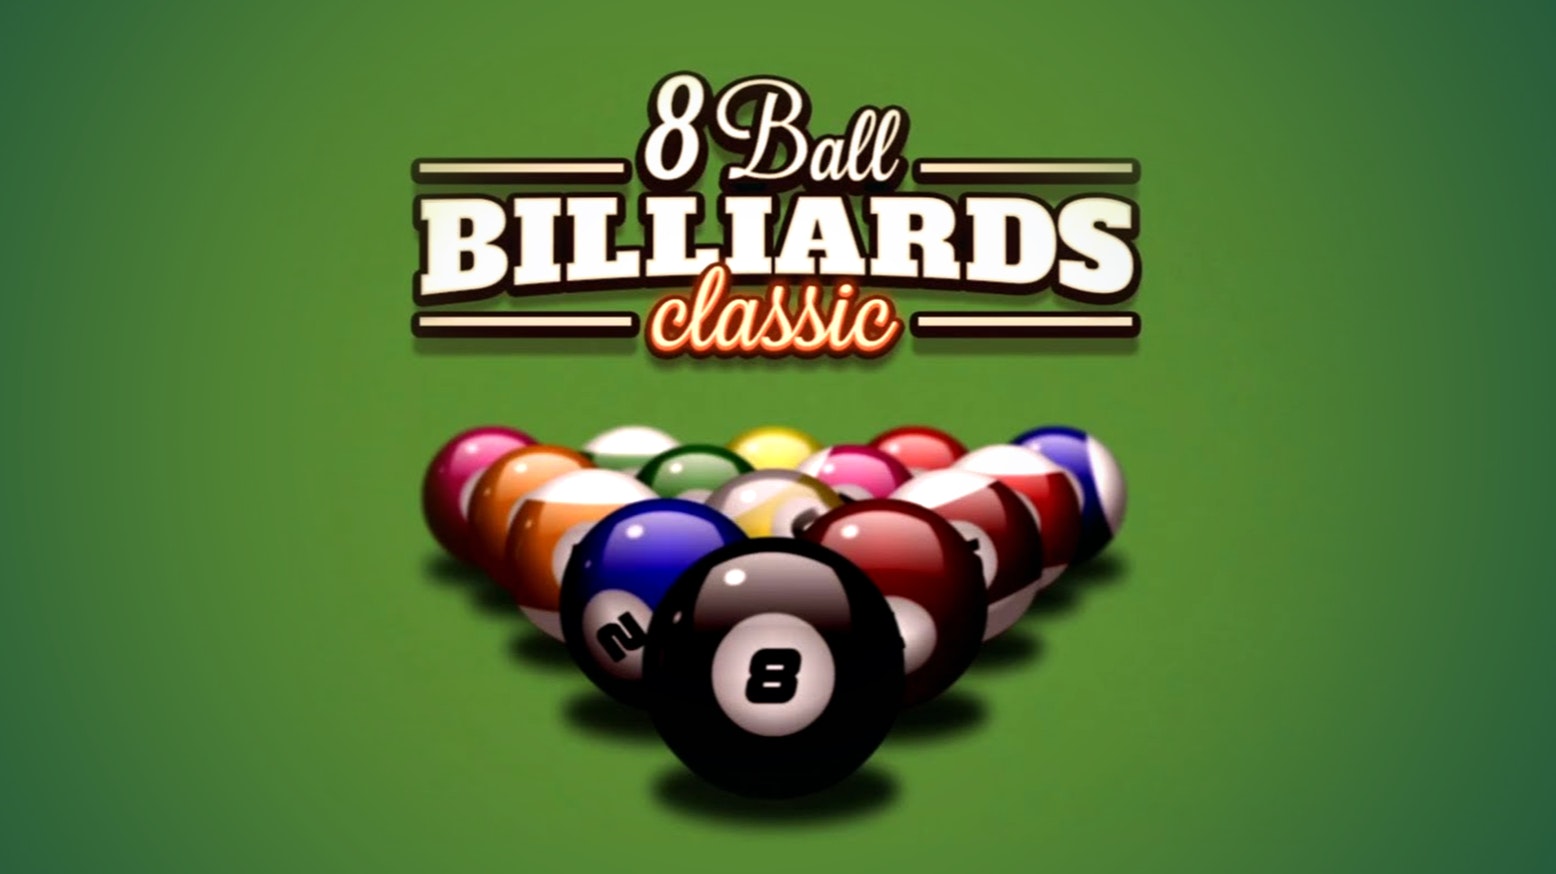 tienda camuflaje Prominente 8 Ball Billiards Classic - Juega a 8 Ball Billiards Classic en 1001Juegos